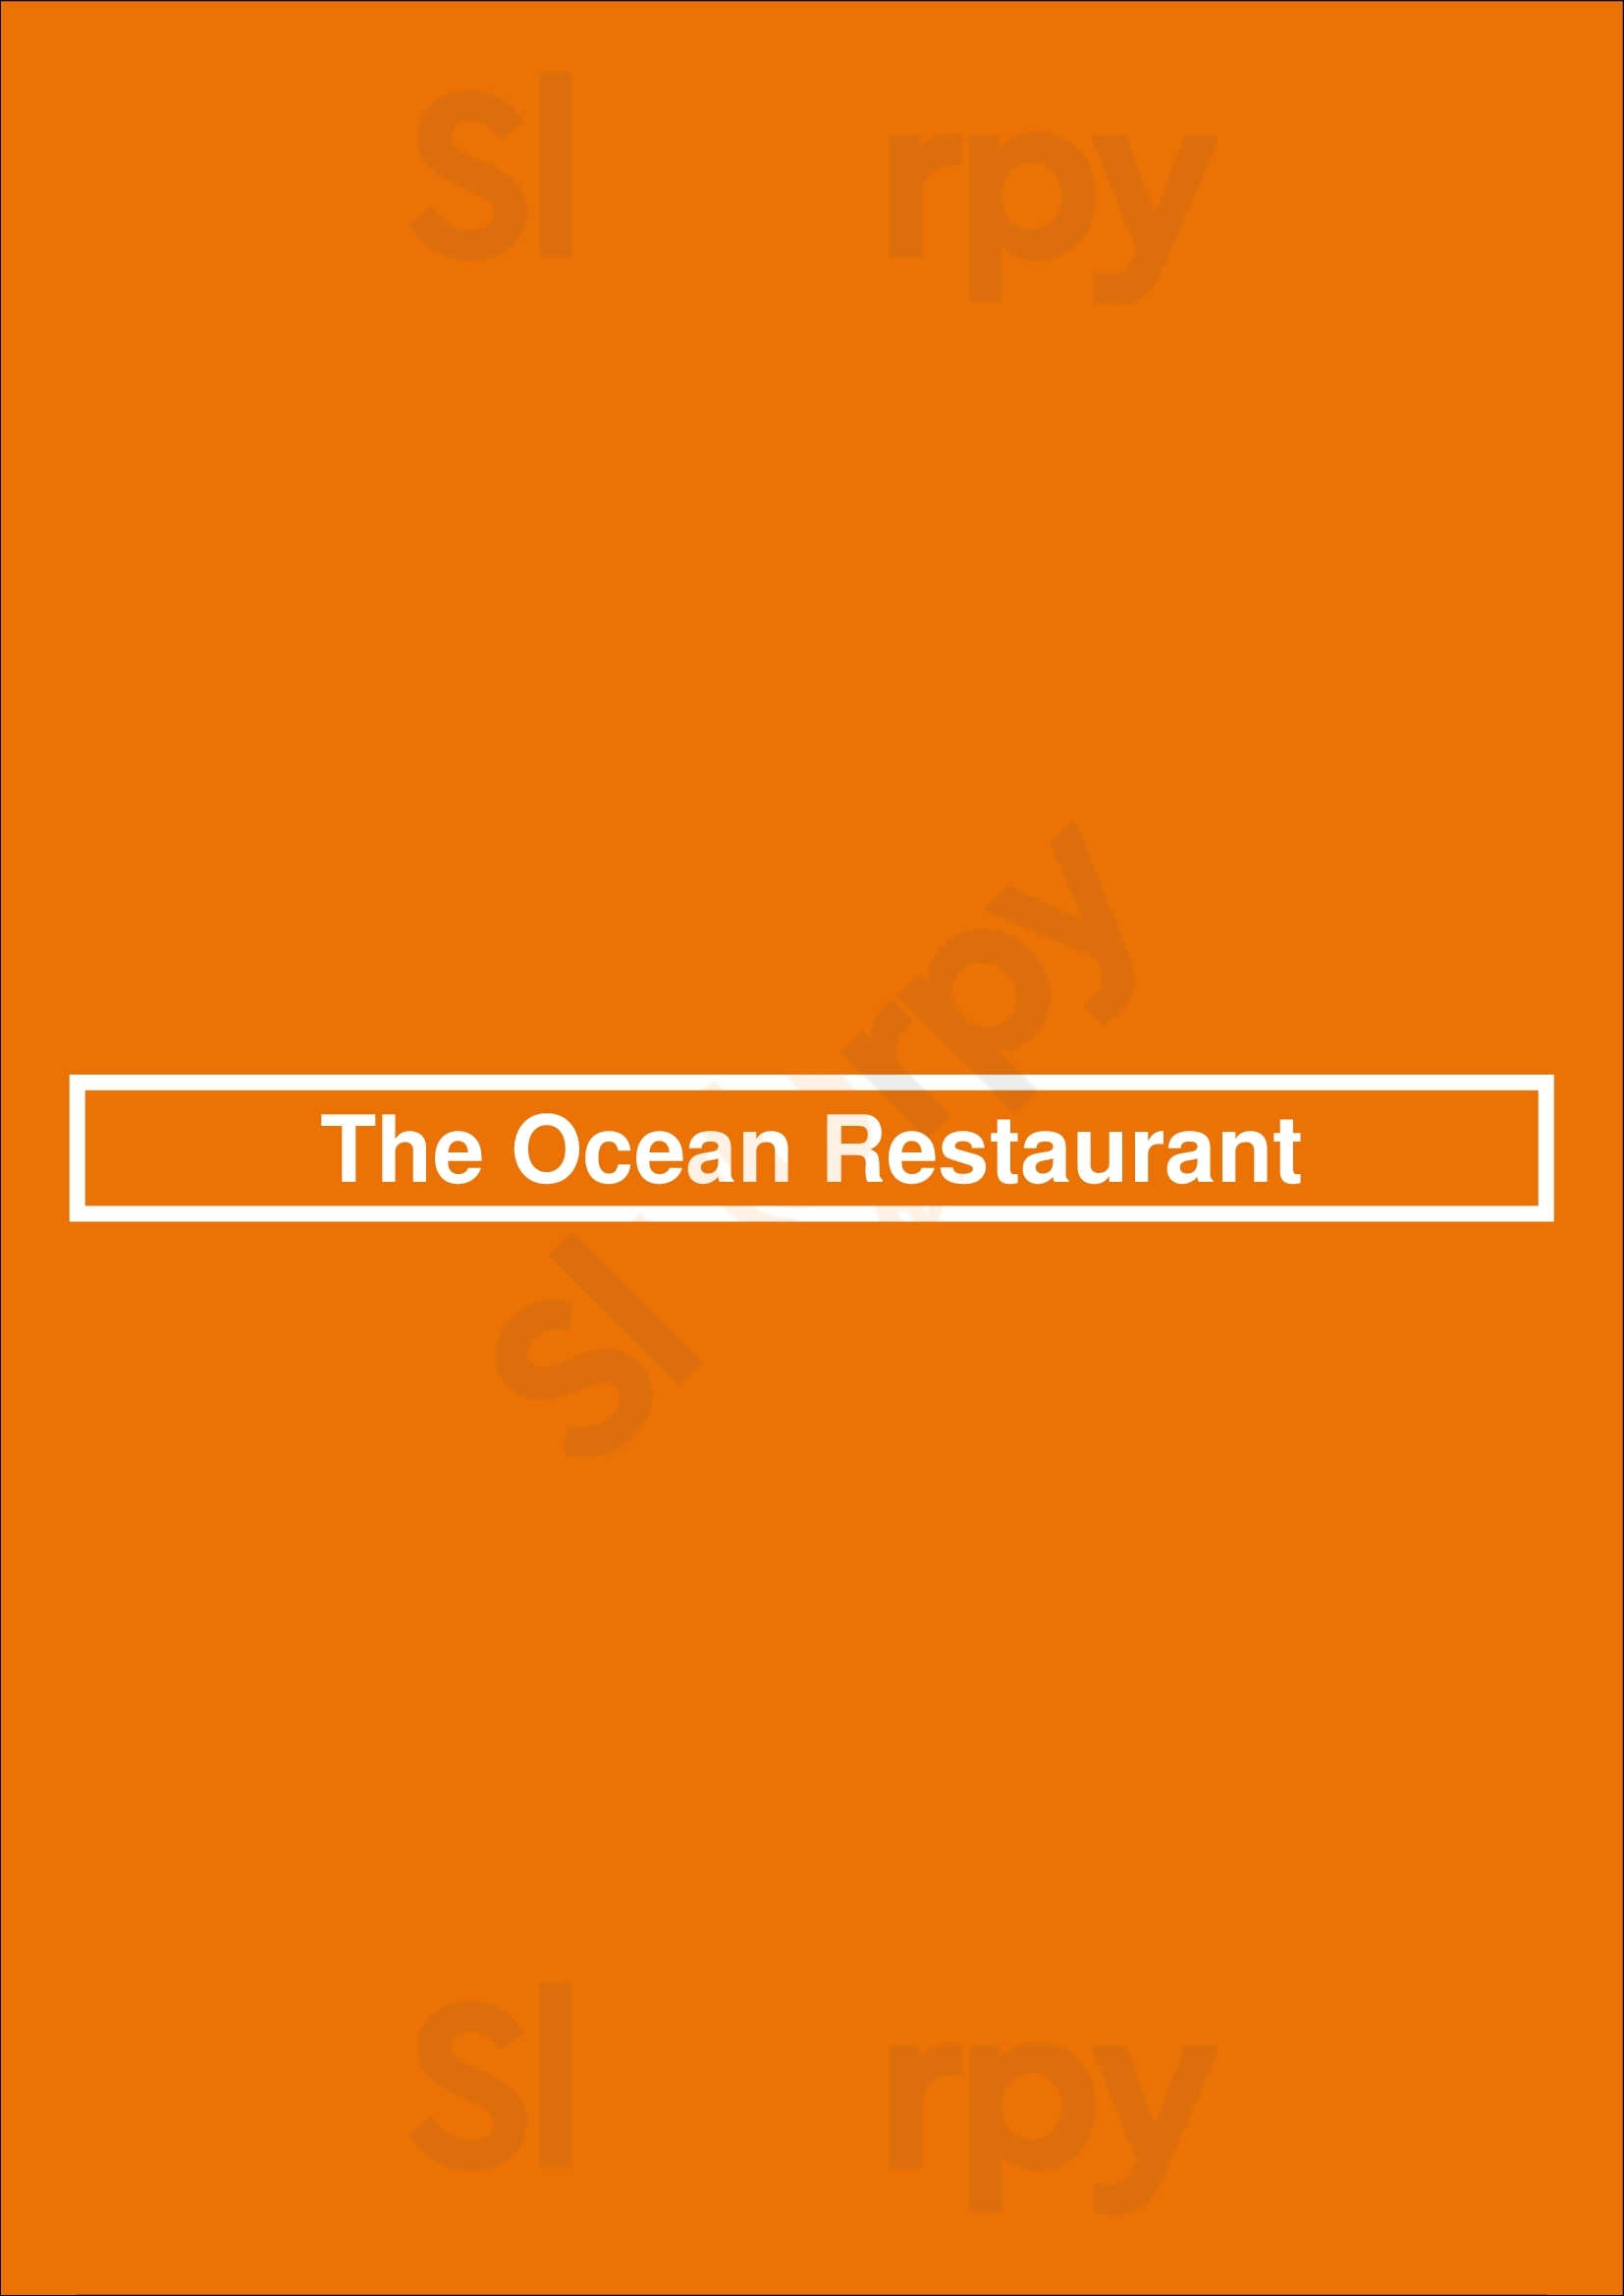 The Ocean Restaurant Brighton Menu - 1